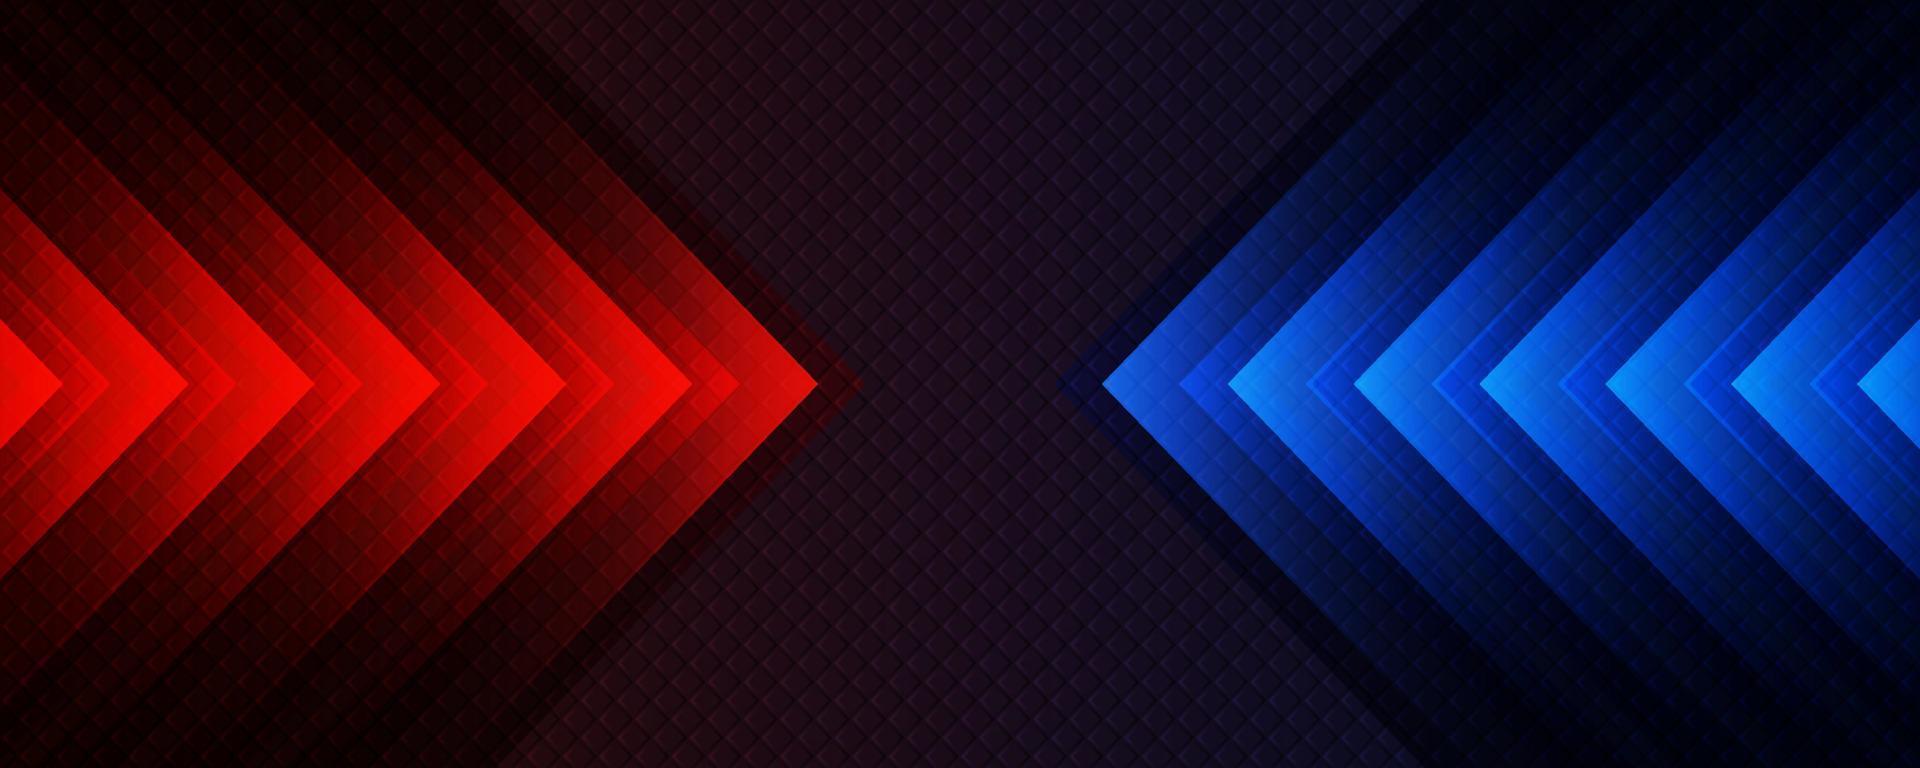 3d röd blå techno abstrakt bakgrund överlappning lager på mörk Plats med pil dekoration. modern grafisk design element rörelse stil begrepp för baner, flygblad, kort, broschyr omslag, eller landning sida vektor